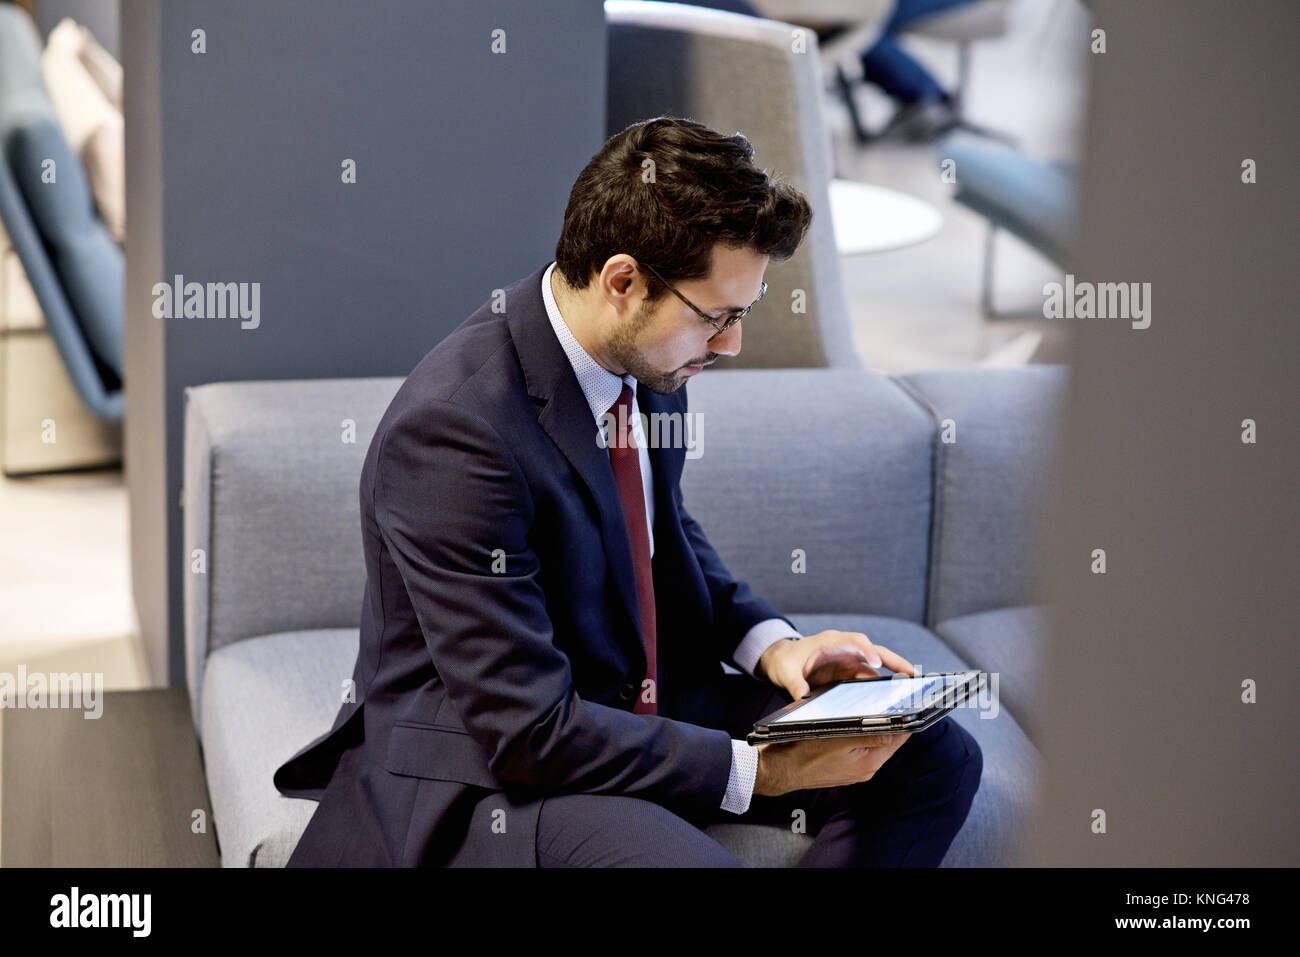 Kaukasische Geschäftsmann in einem eleganten Anzug mit einem mobilen Tablet-Gerät in einem modernen Interieur gestaltet Amt bekleidet Stockfoto